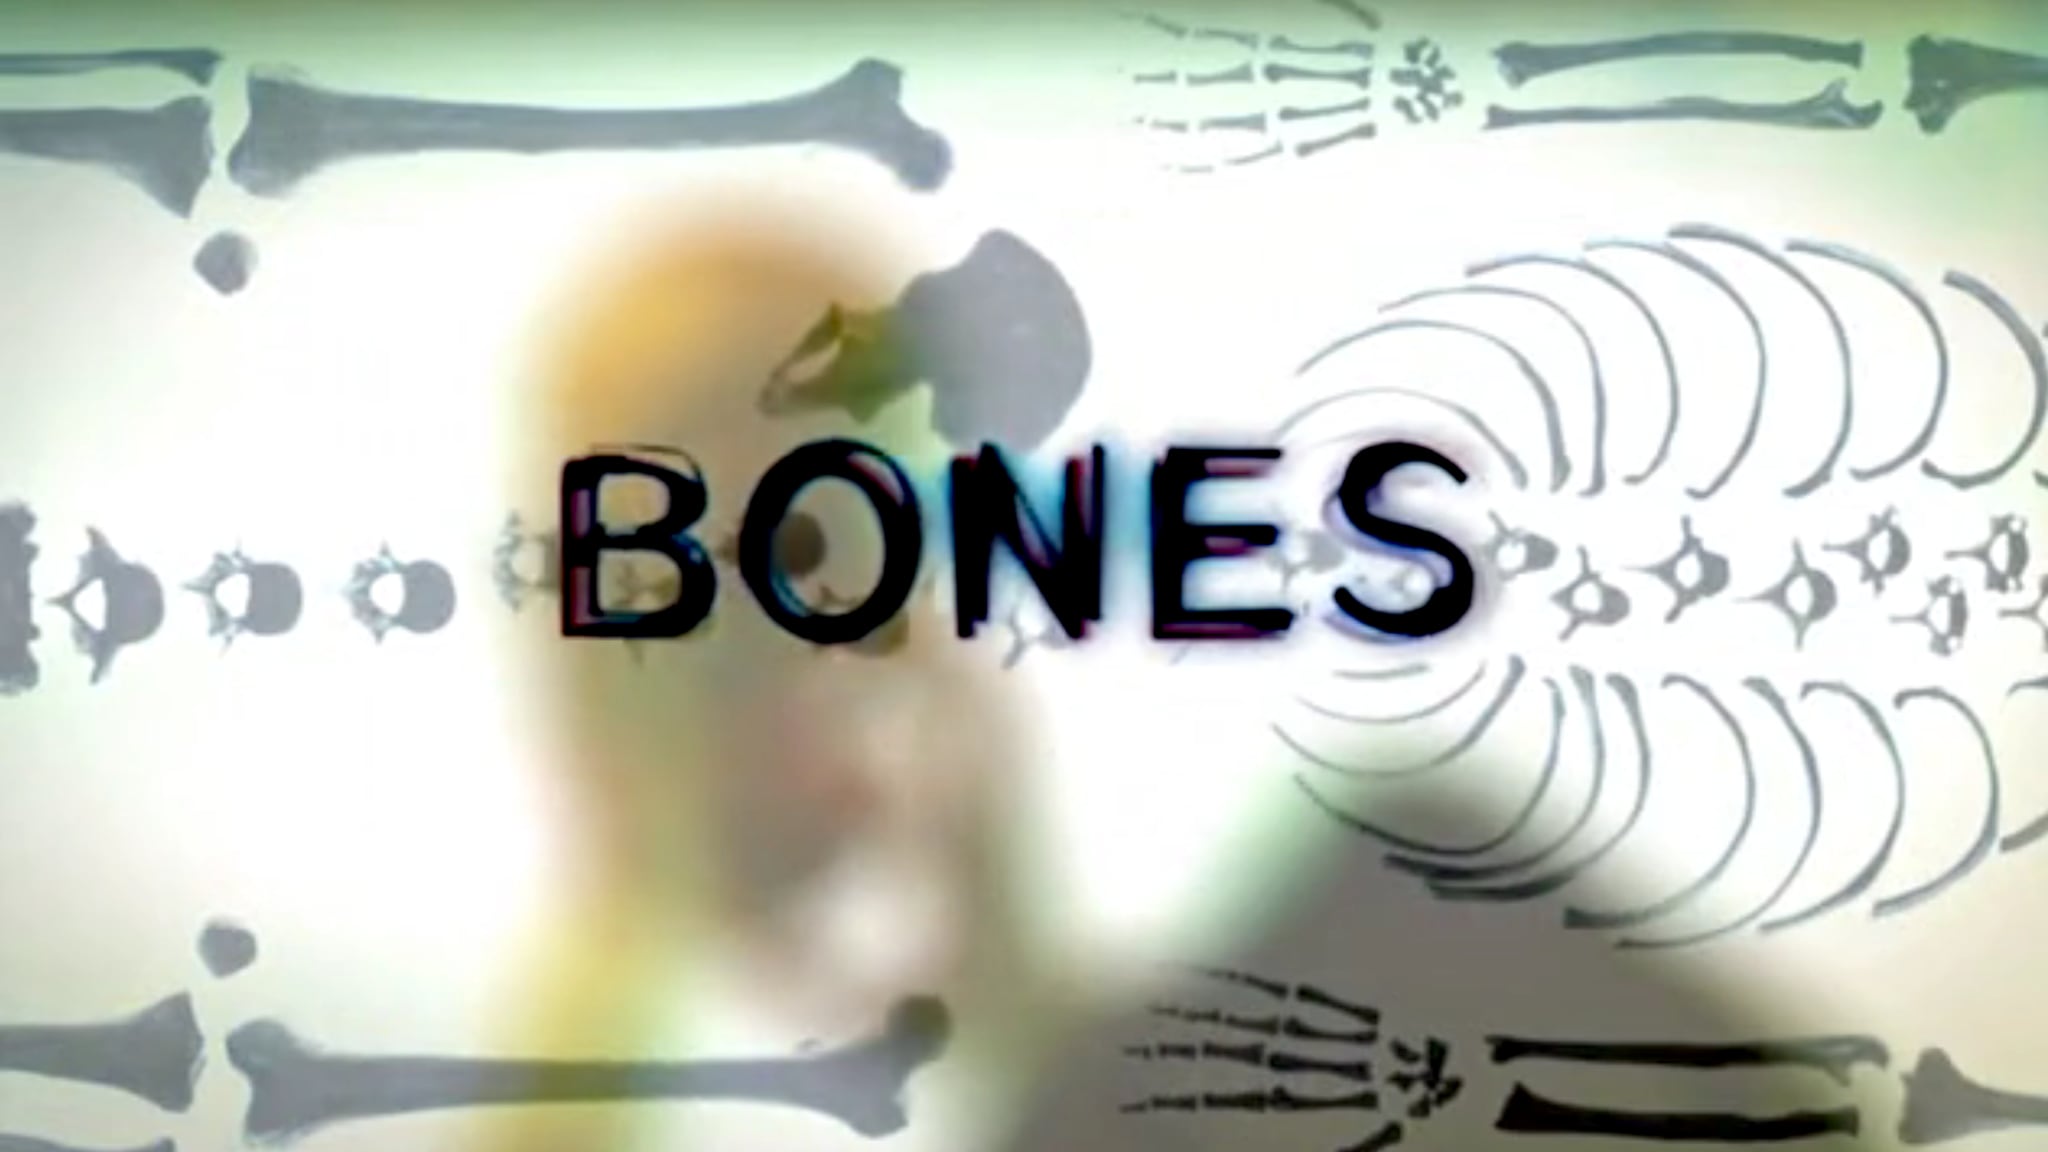 Rai 4 Bones S2E14 - Manomissione di prove